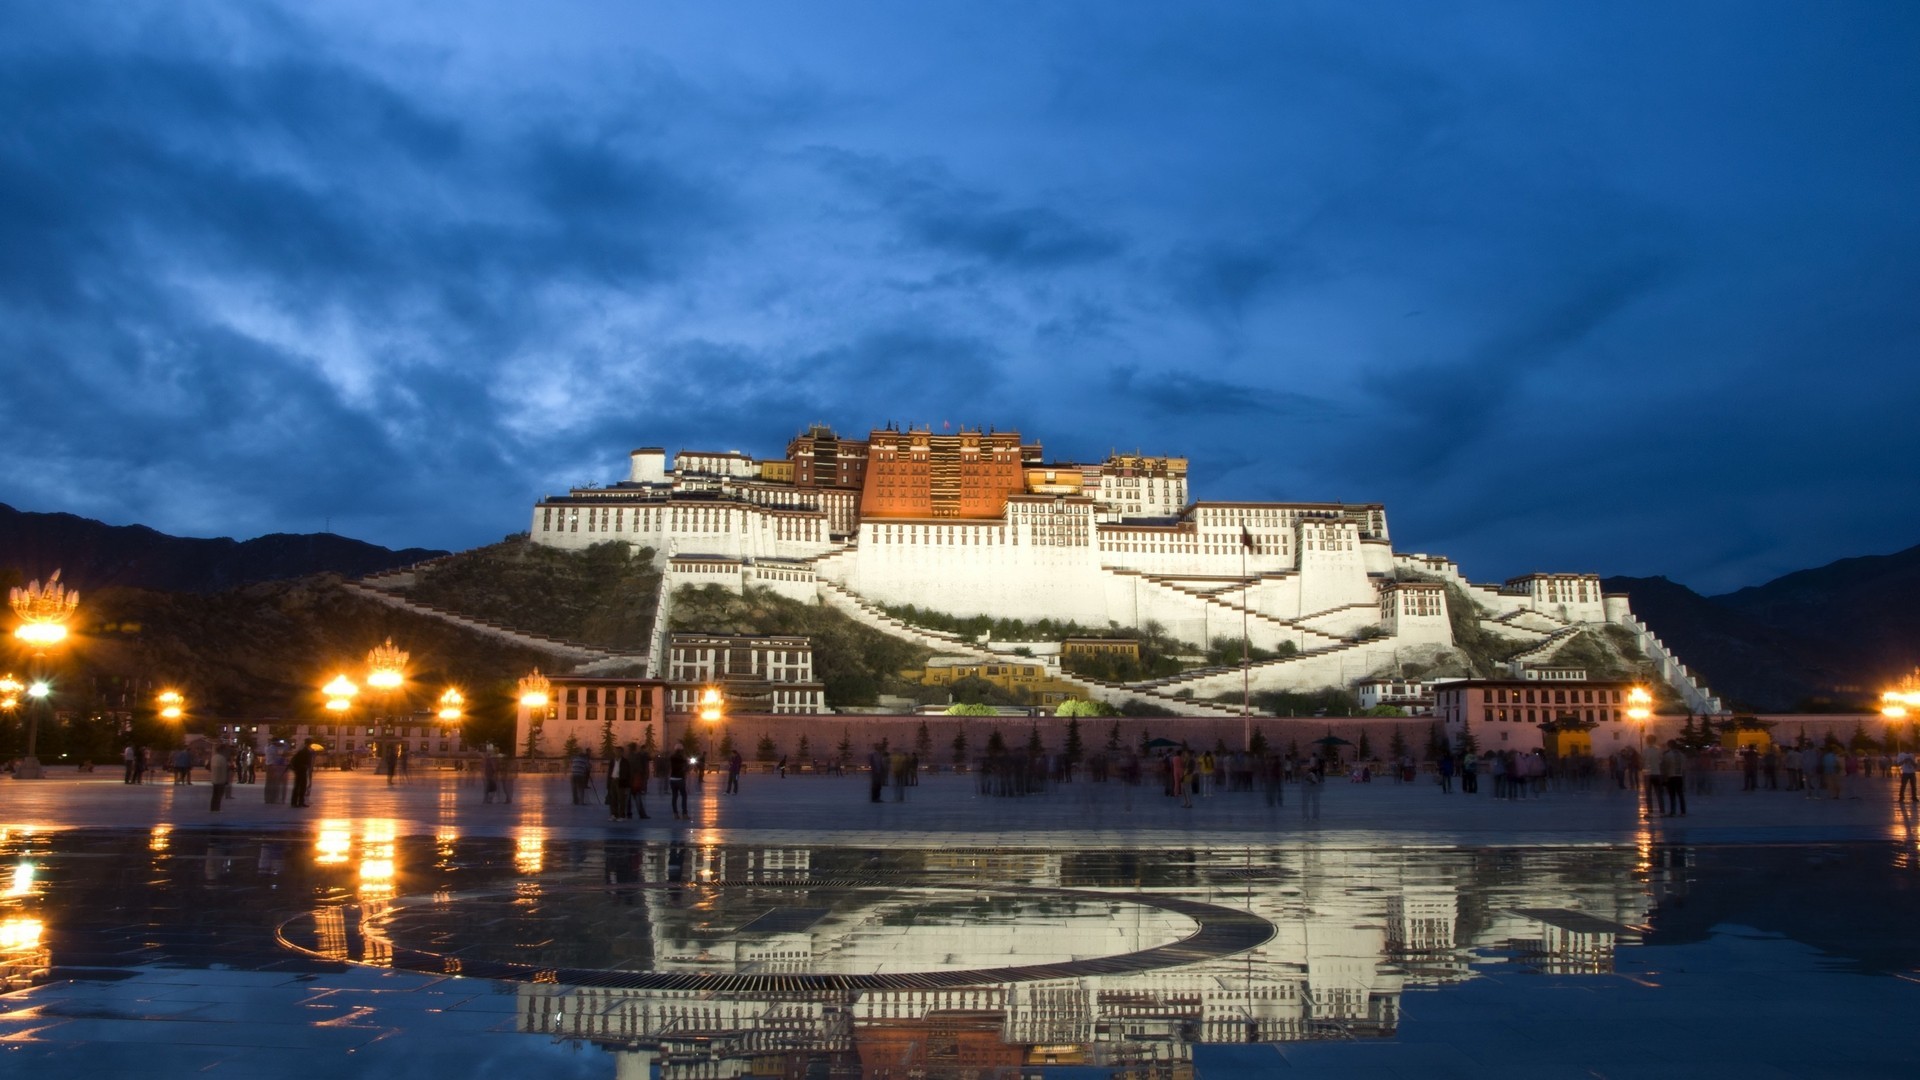 Tibet Potala Palace Lhasa Buddhism China 1920x1080